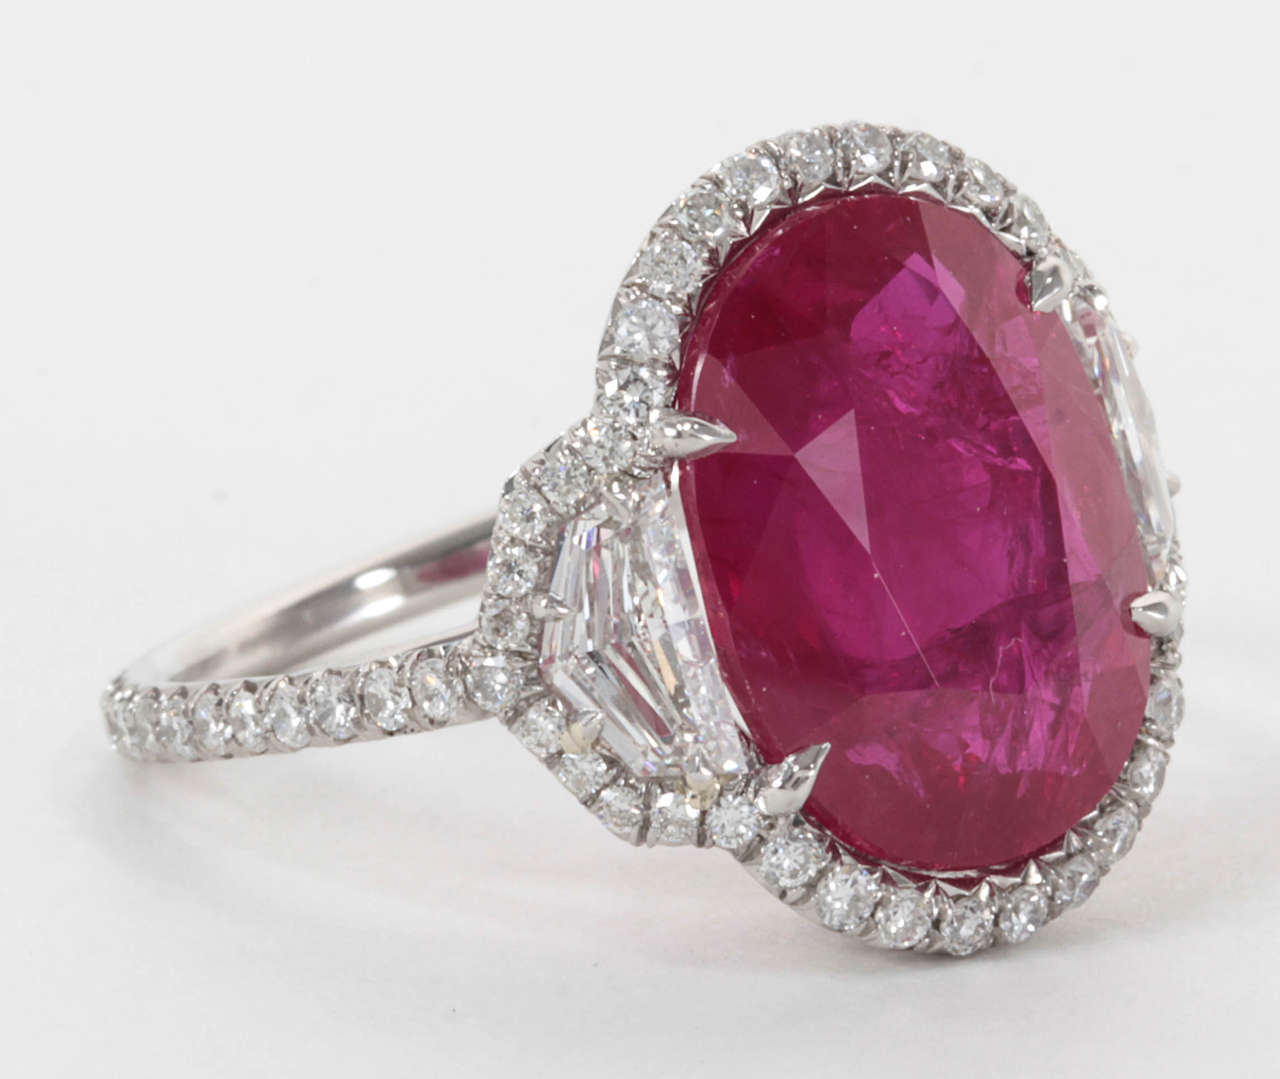 Wunderschöner ovaler Rubin von 8,06 Karat, gefasst in einer handgefertigten Mikropave-Diamantfassung mit speziell geschliffenen seitlichen Diamanten.

1.56 Karat Diamanten, gefasst in Platin.

Bilder werden diesem Ring nicht gerecht, bitte